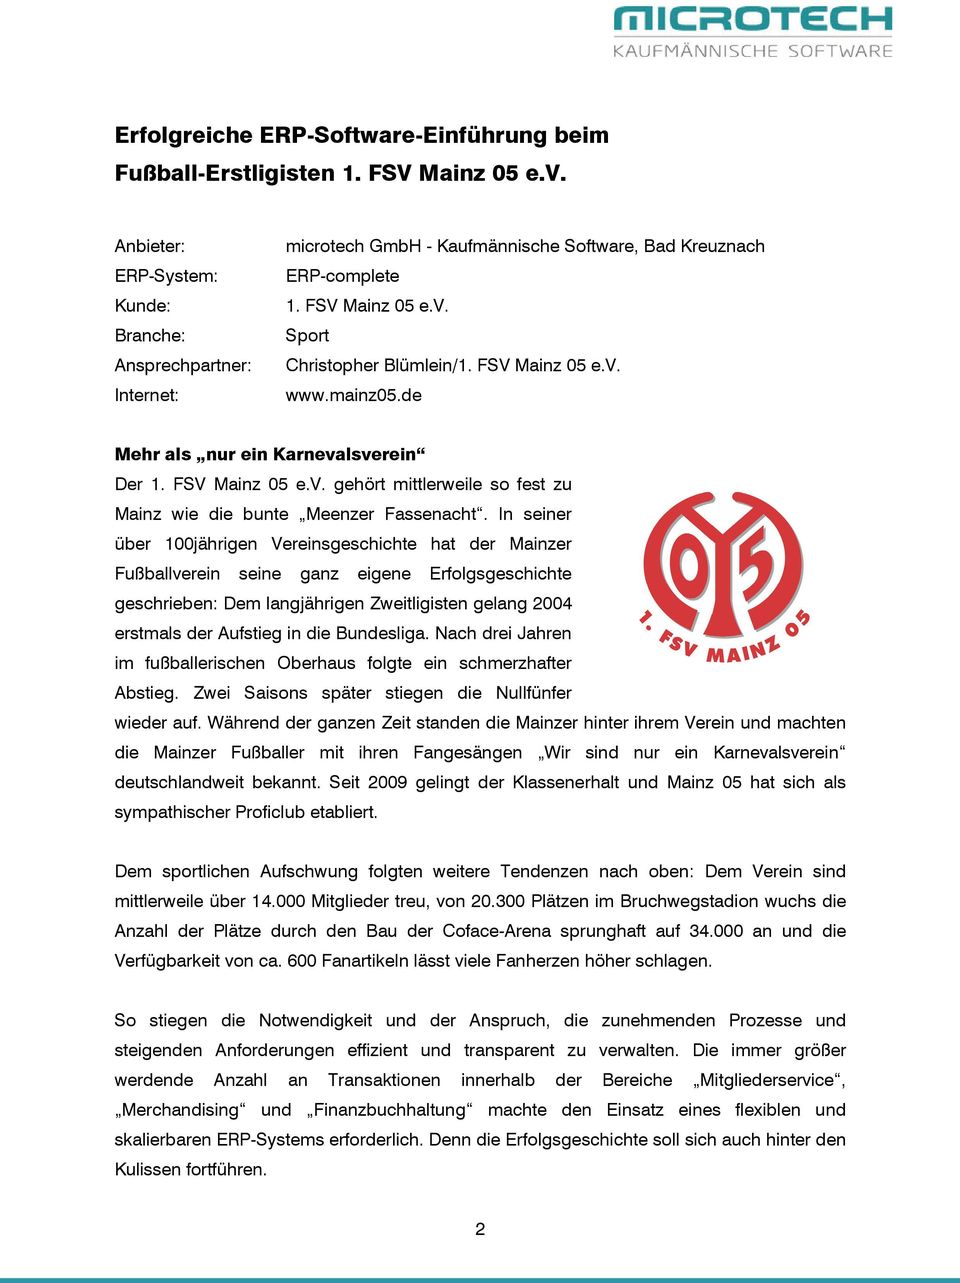 mainz05.de Mehr als nur ein Karnevalsverein Der 1. FSV Mainz 05 e.v. gehört mittlerweile so fest zu Mainz wie die bunte Meenzer Fassenacht.